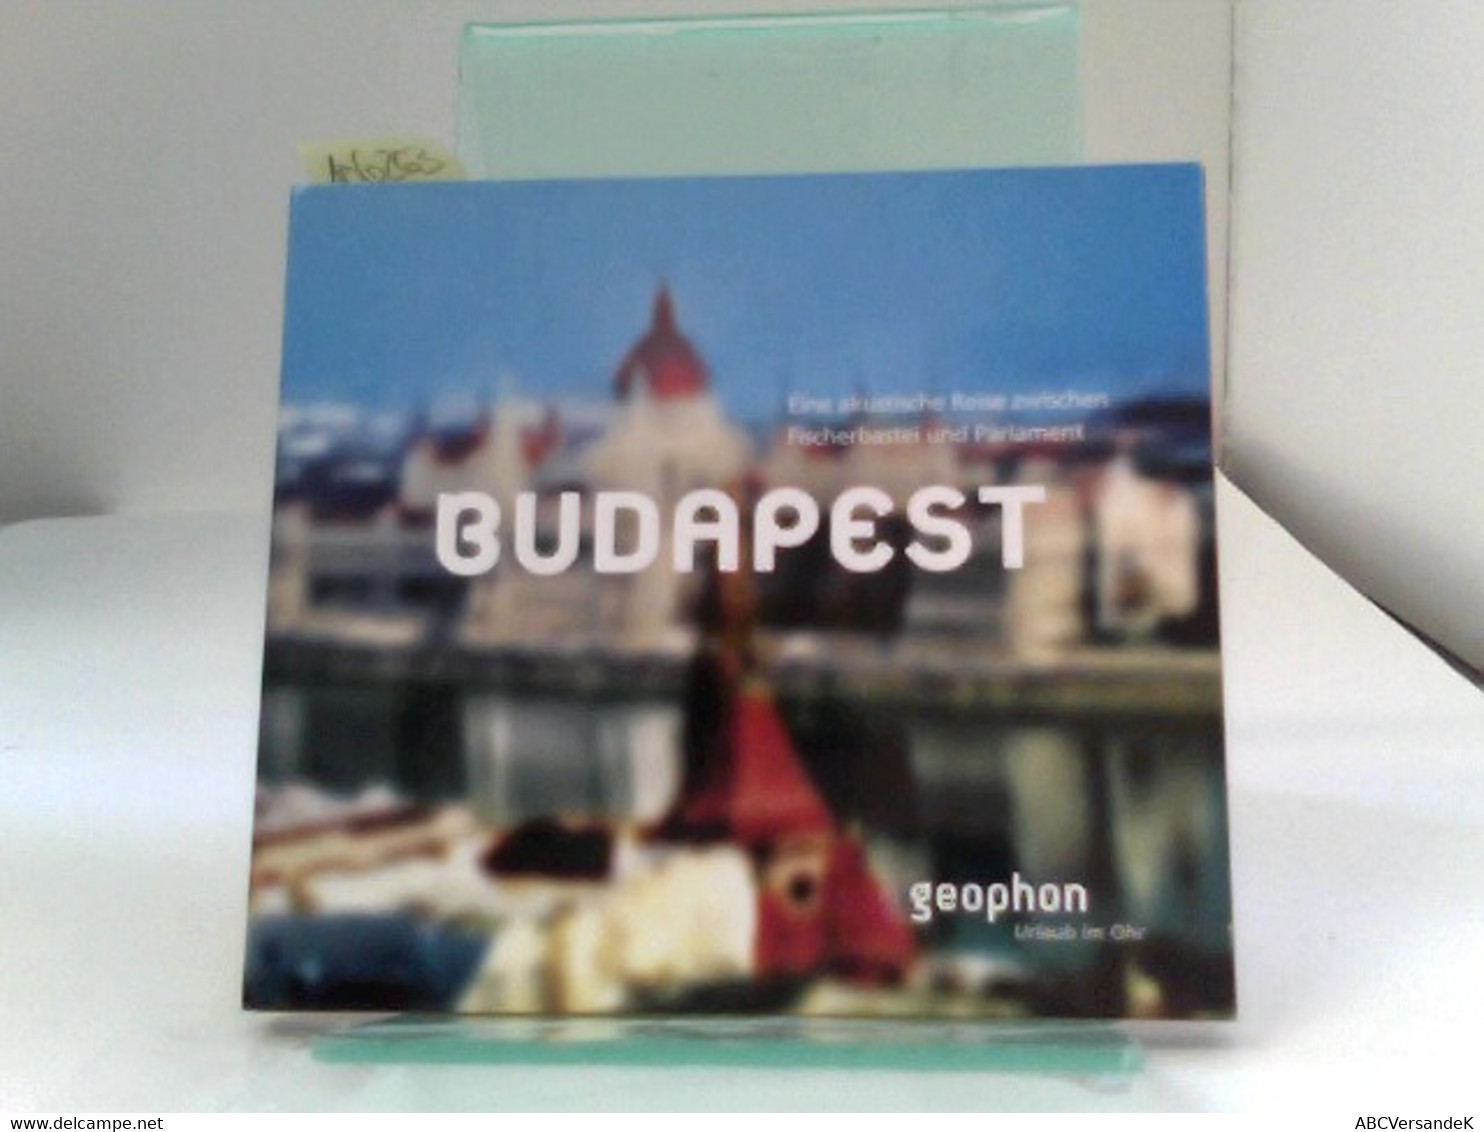 Budapest. Eine Akustische Reise Zwischen Fischerbastei Und Parlament. Reisefeature Mit Musik Und O-Tönen. 1 CD - CD